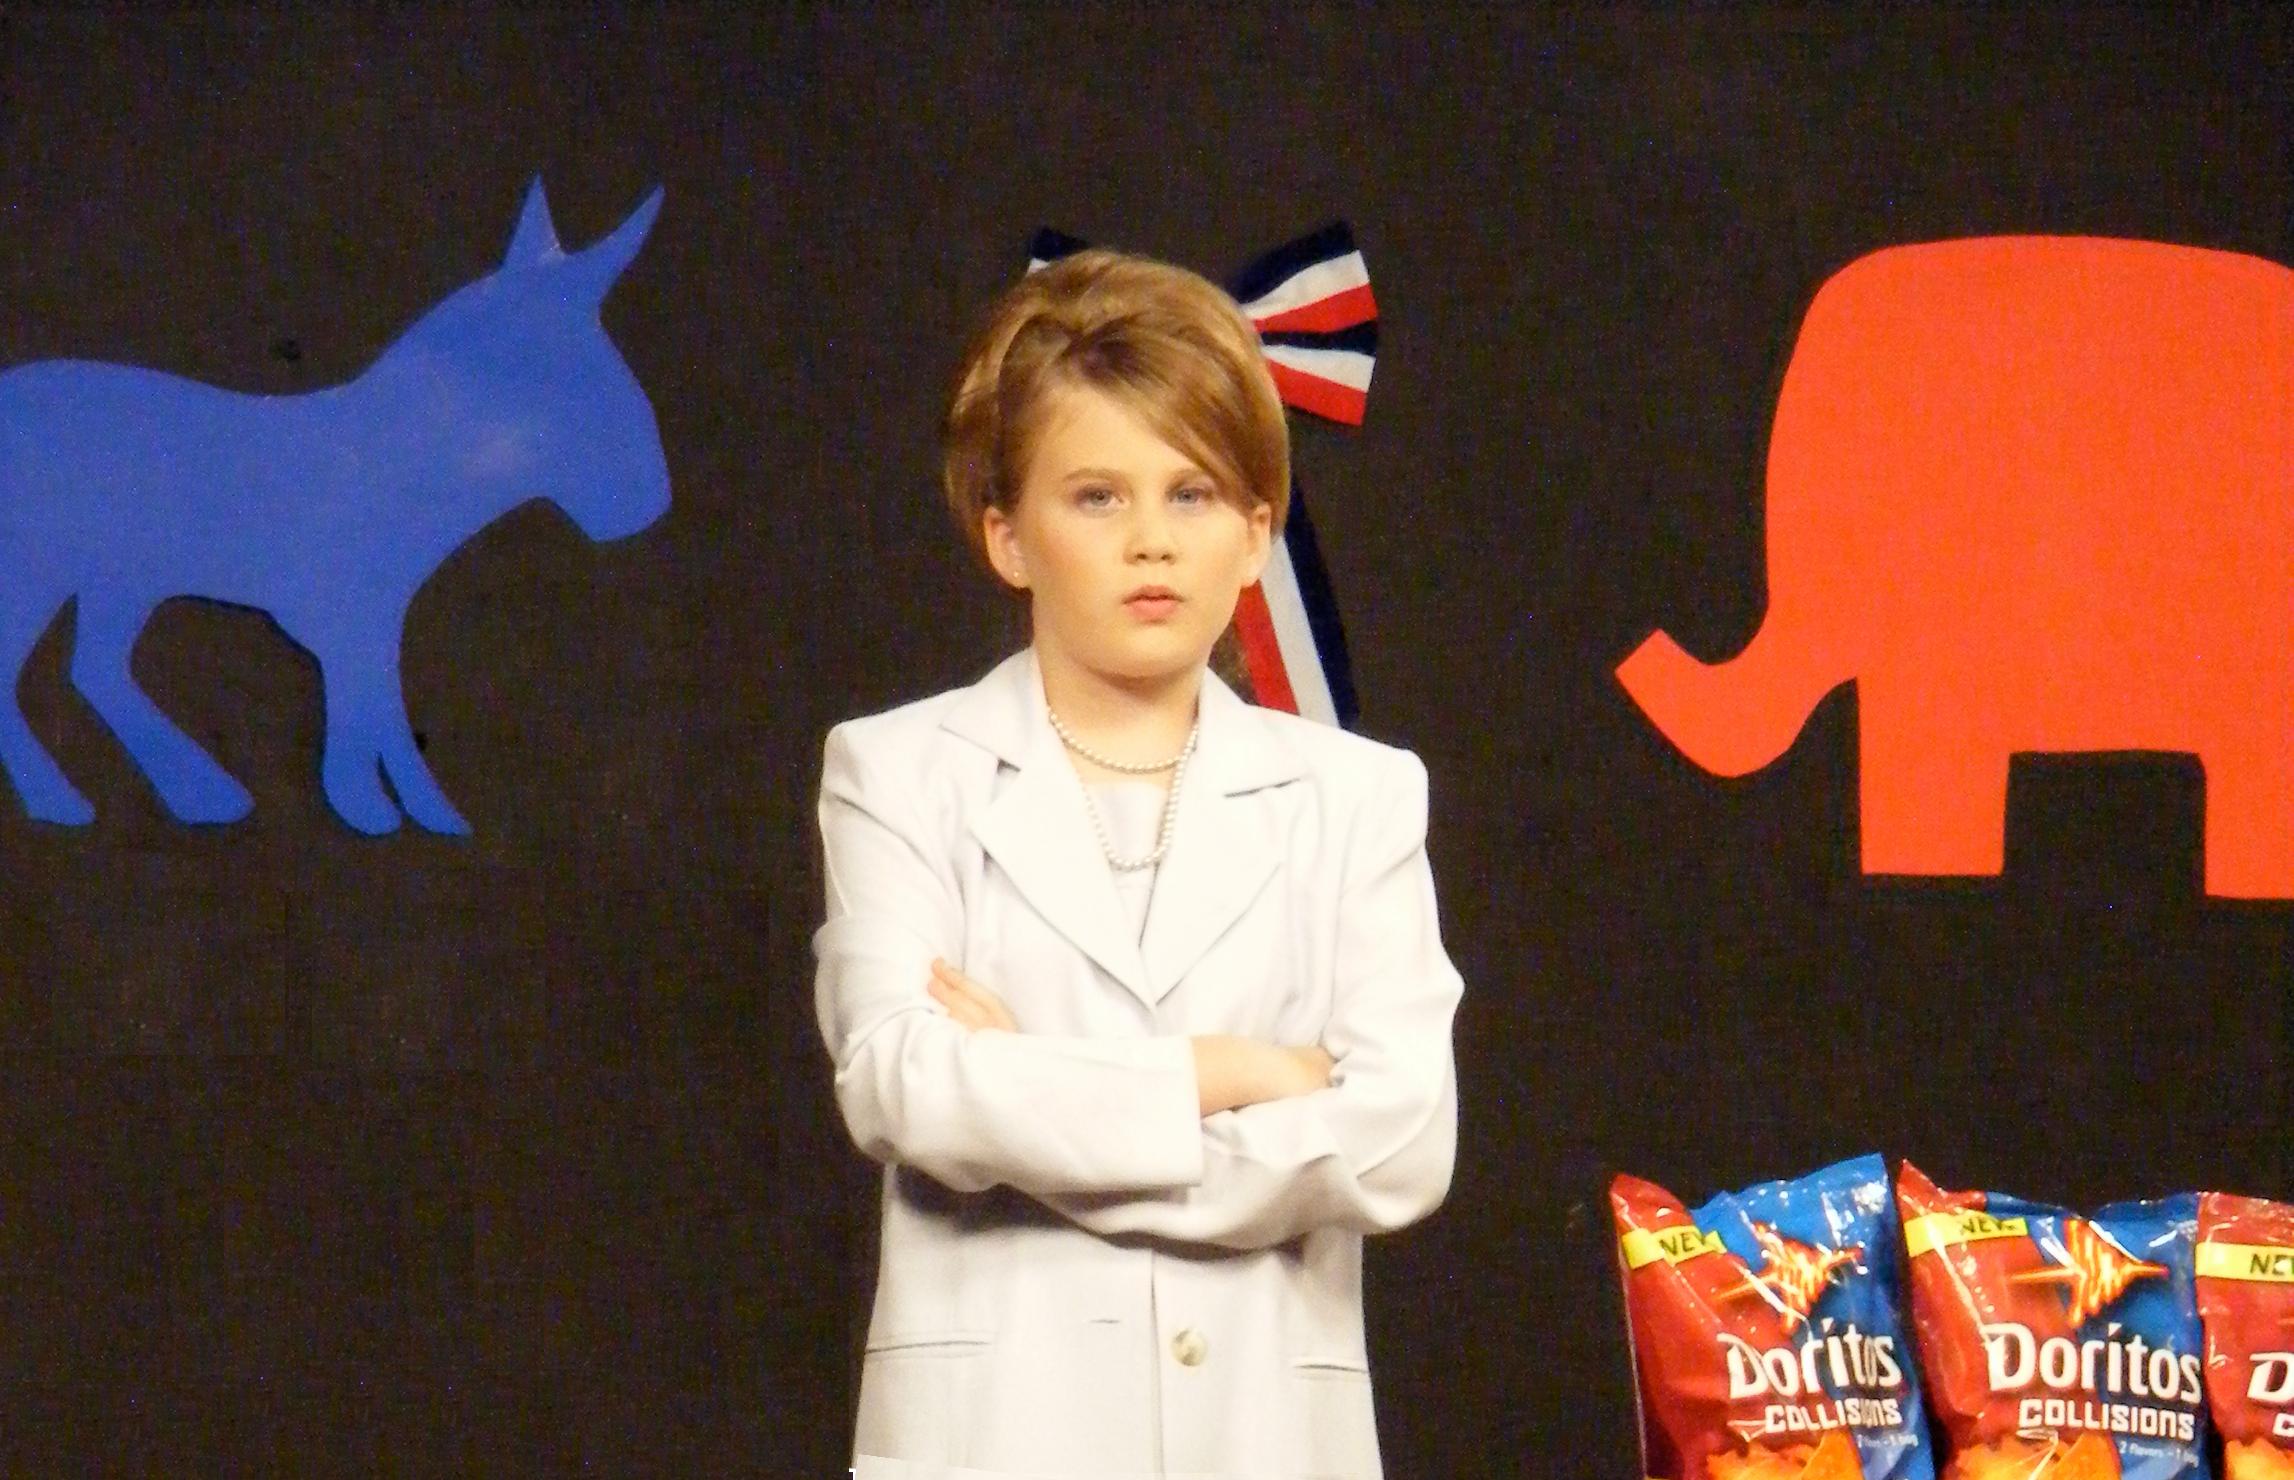 As Hilary Clinton in a Doritos commercial